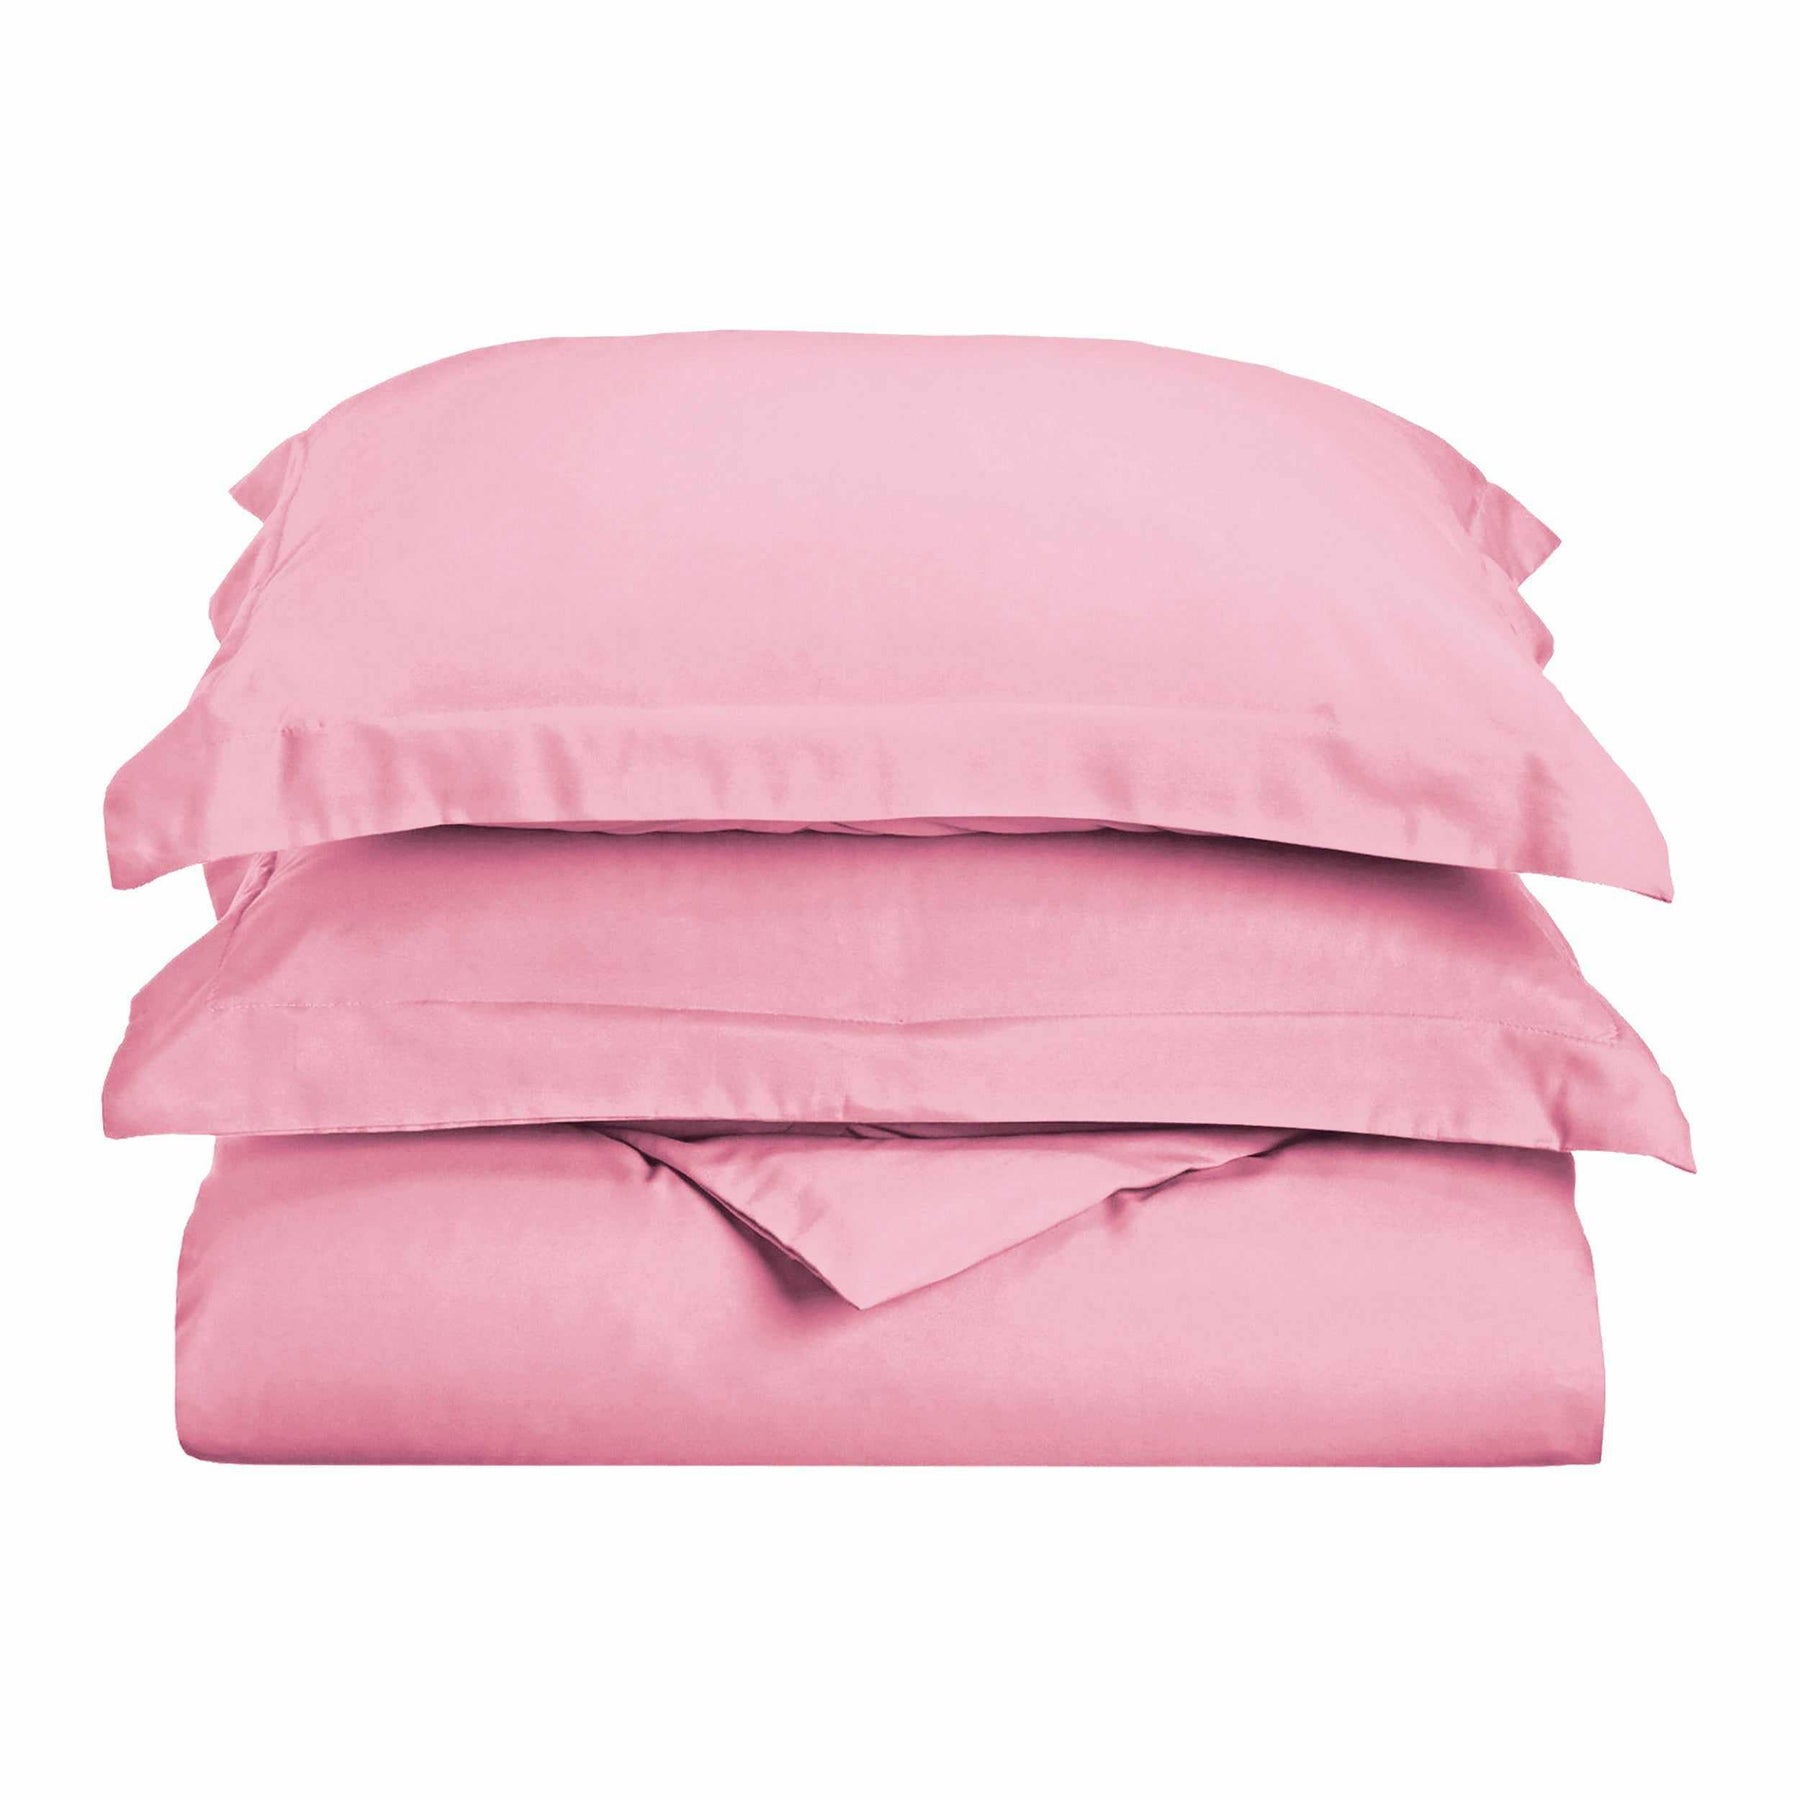  Superior Solid Microfiber Wrinkle Resistant Duvet Cover Set - Pink